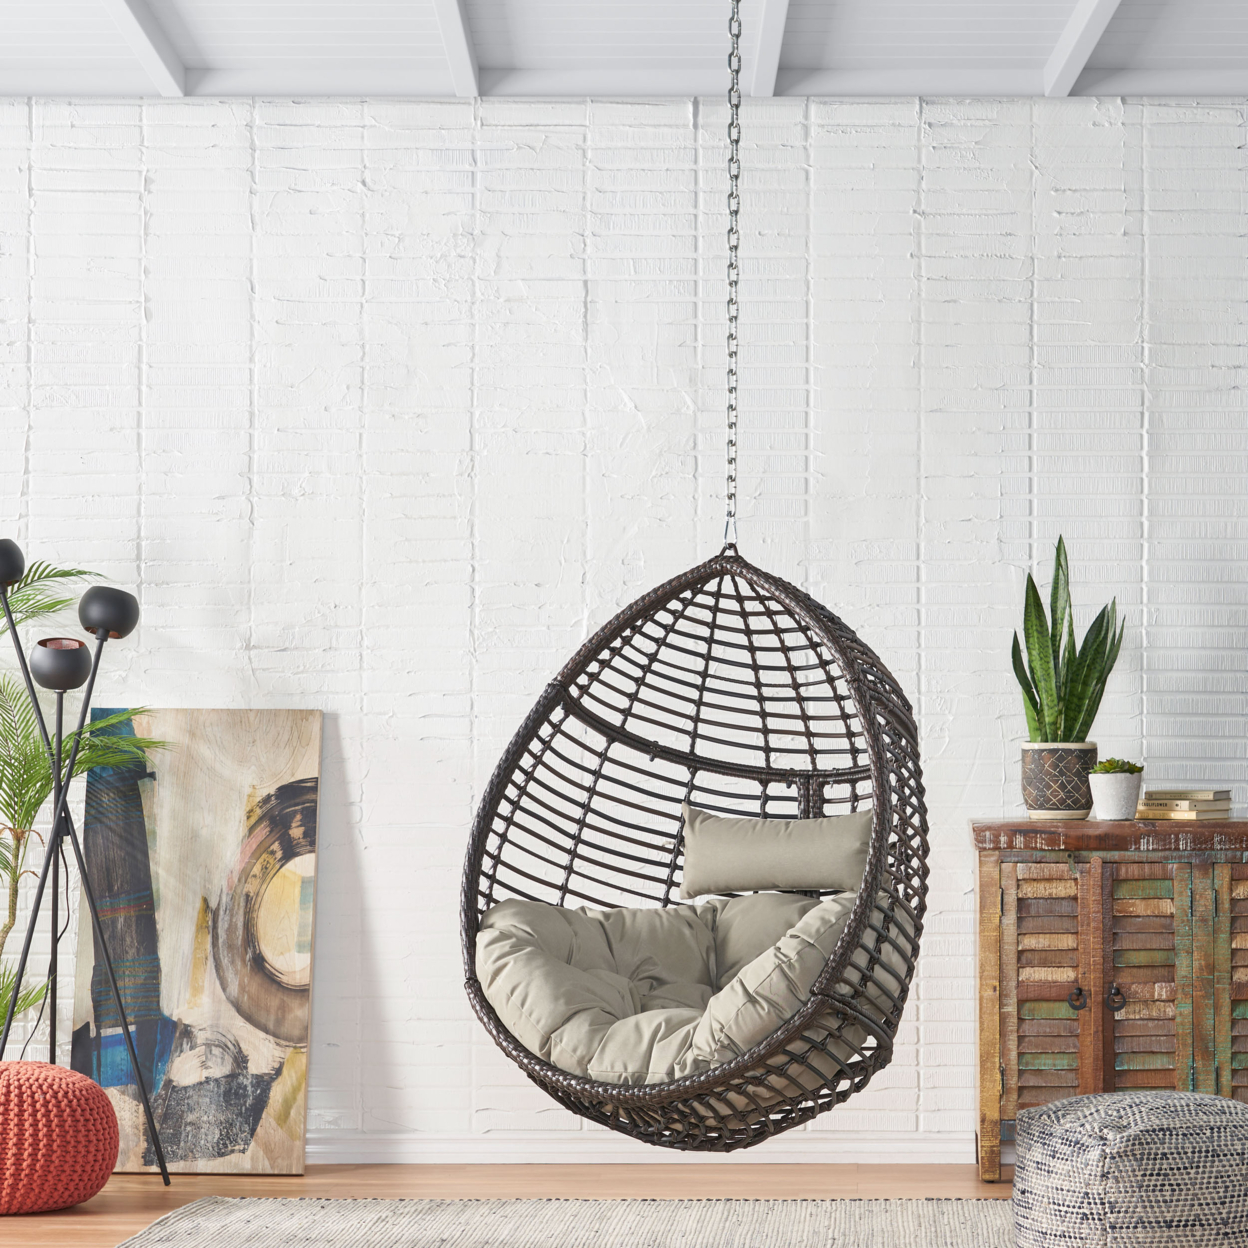 Hempstead Indoor/Outdoor Wicker Hanging Teardrop / Egg Chair (NO STAND) - Gray